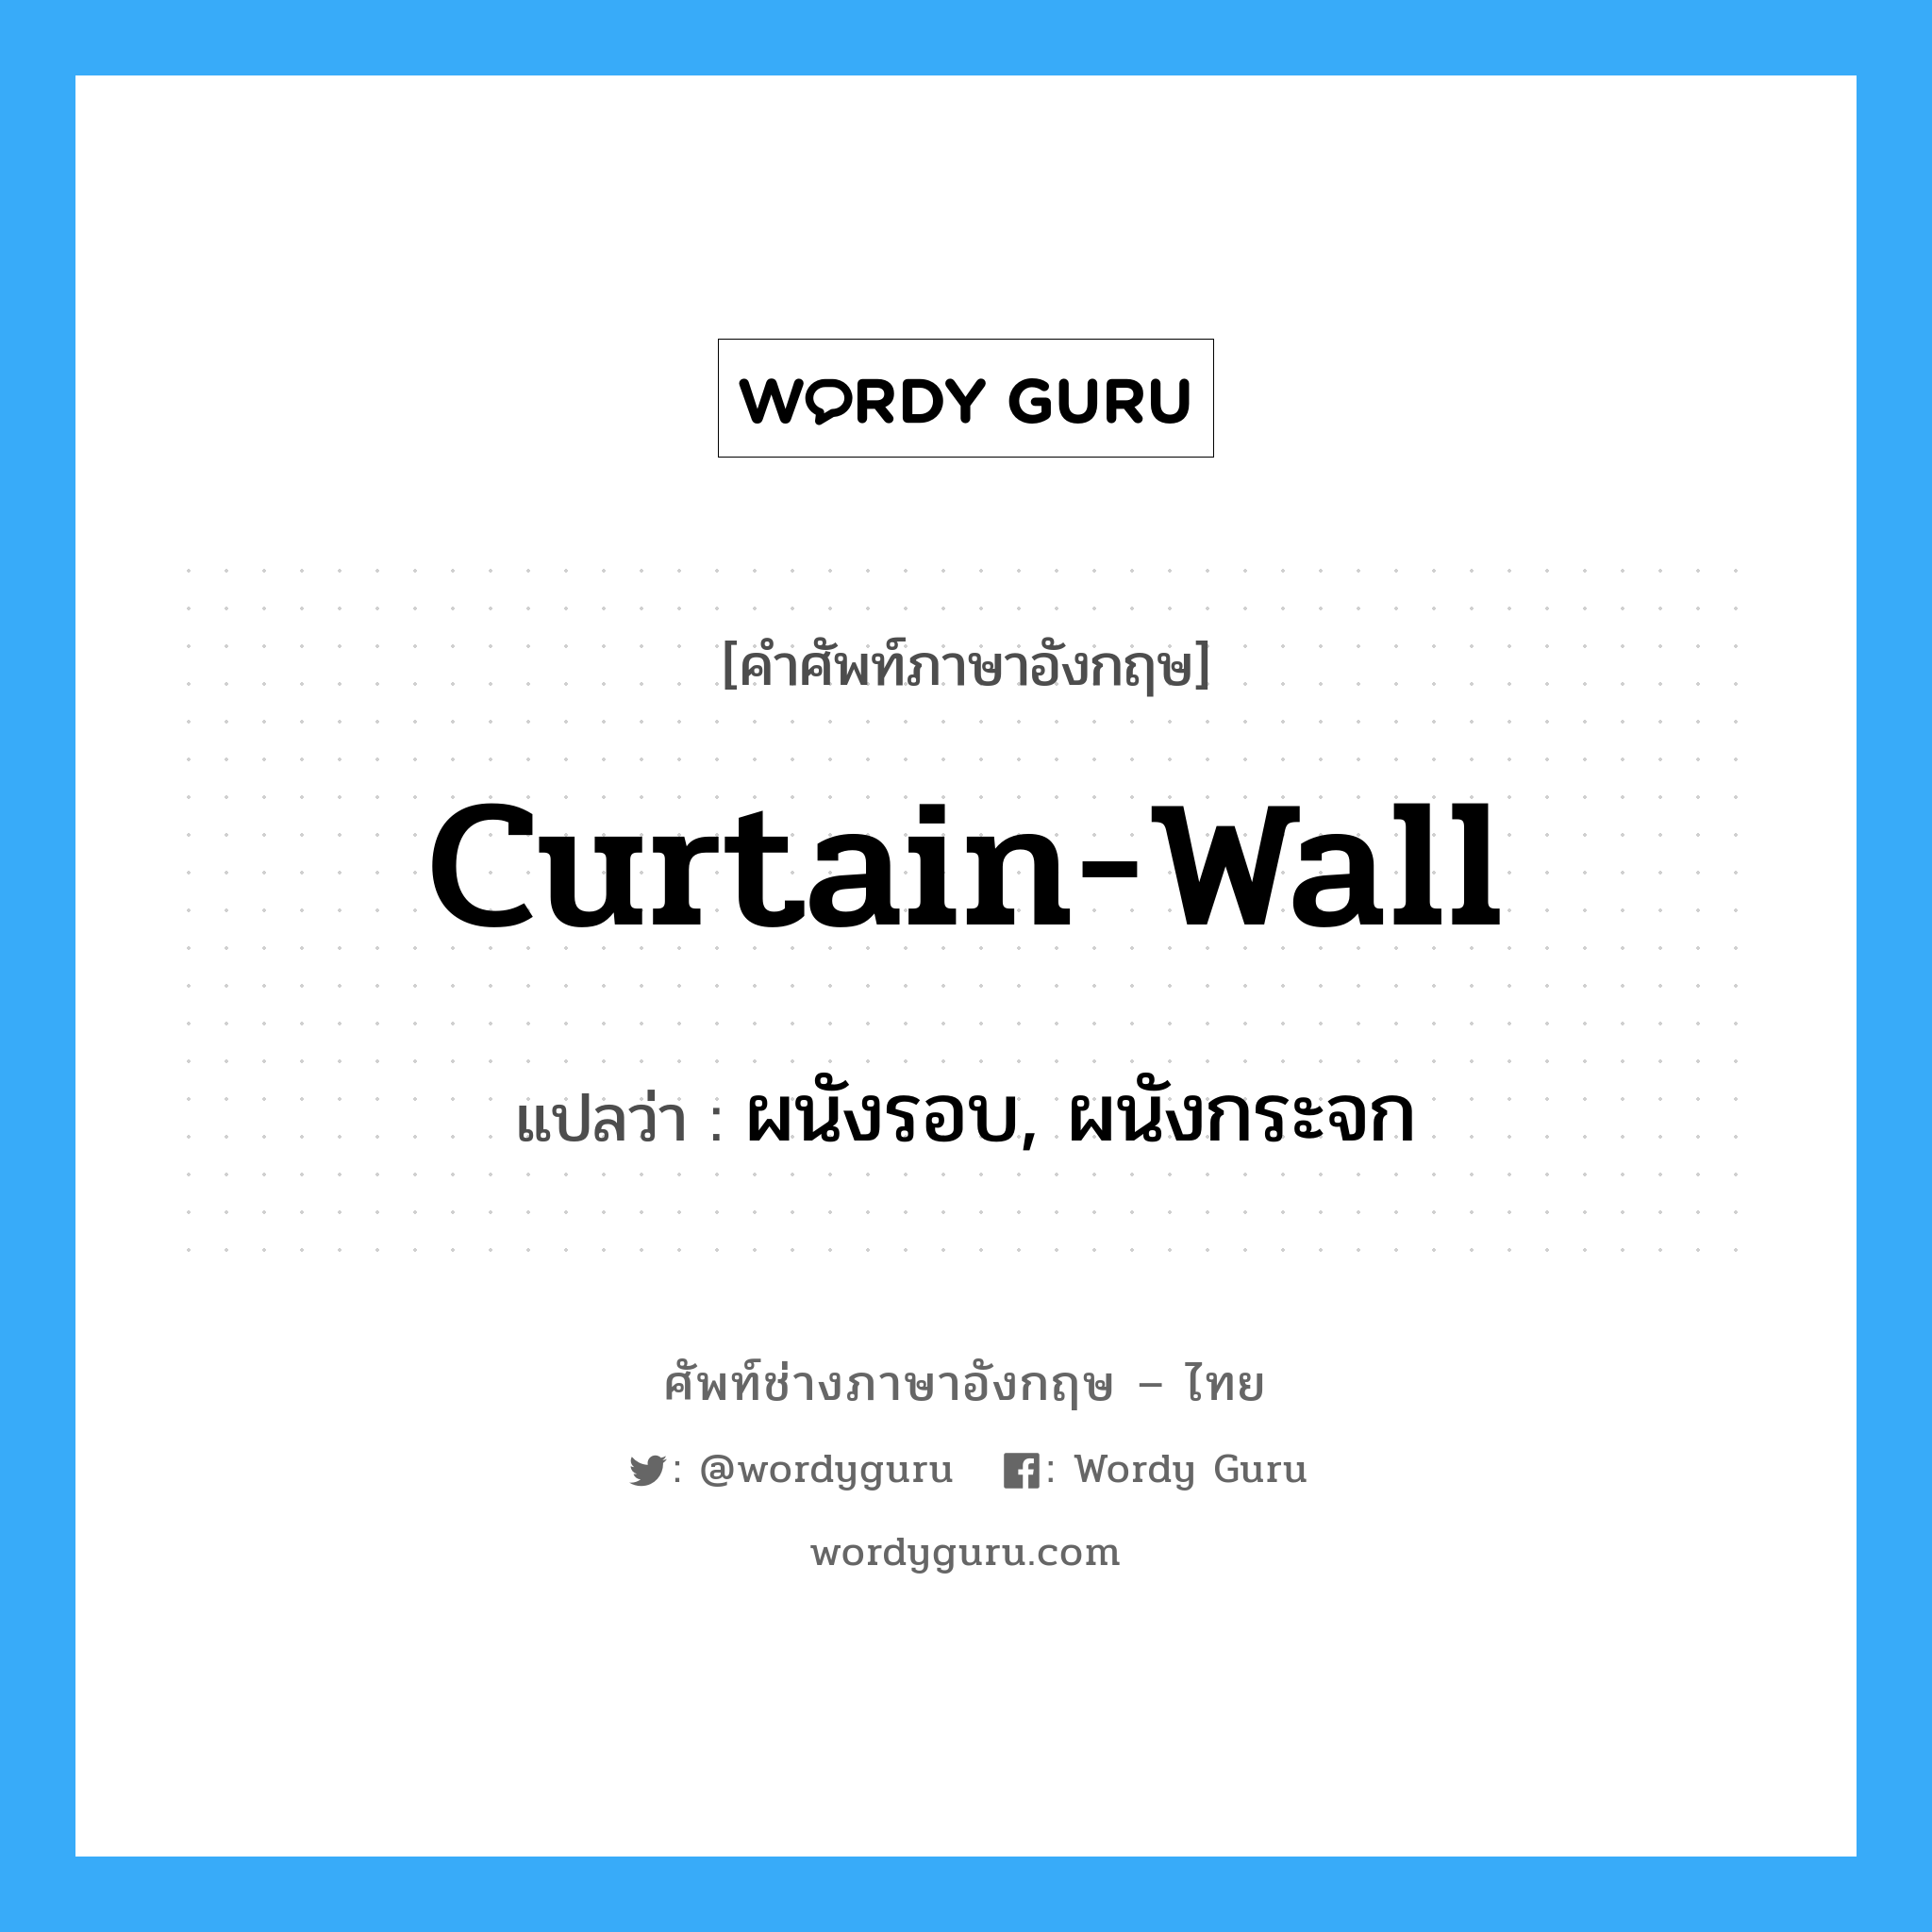 curtain-wall แปลว่า?, คำศัพท์ช่างภาษาอังกฤษ - ไทย curtain-wall คำศัพท์ภาษาอังกฤษ curtain-wall แปลว่า ผนังรอบ, ผนังกระจก